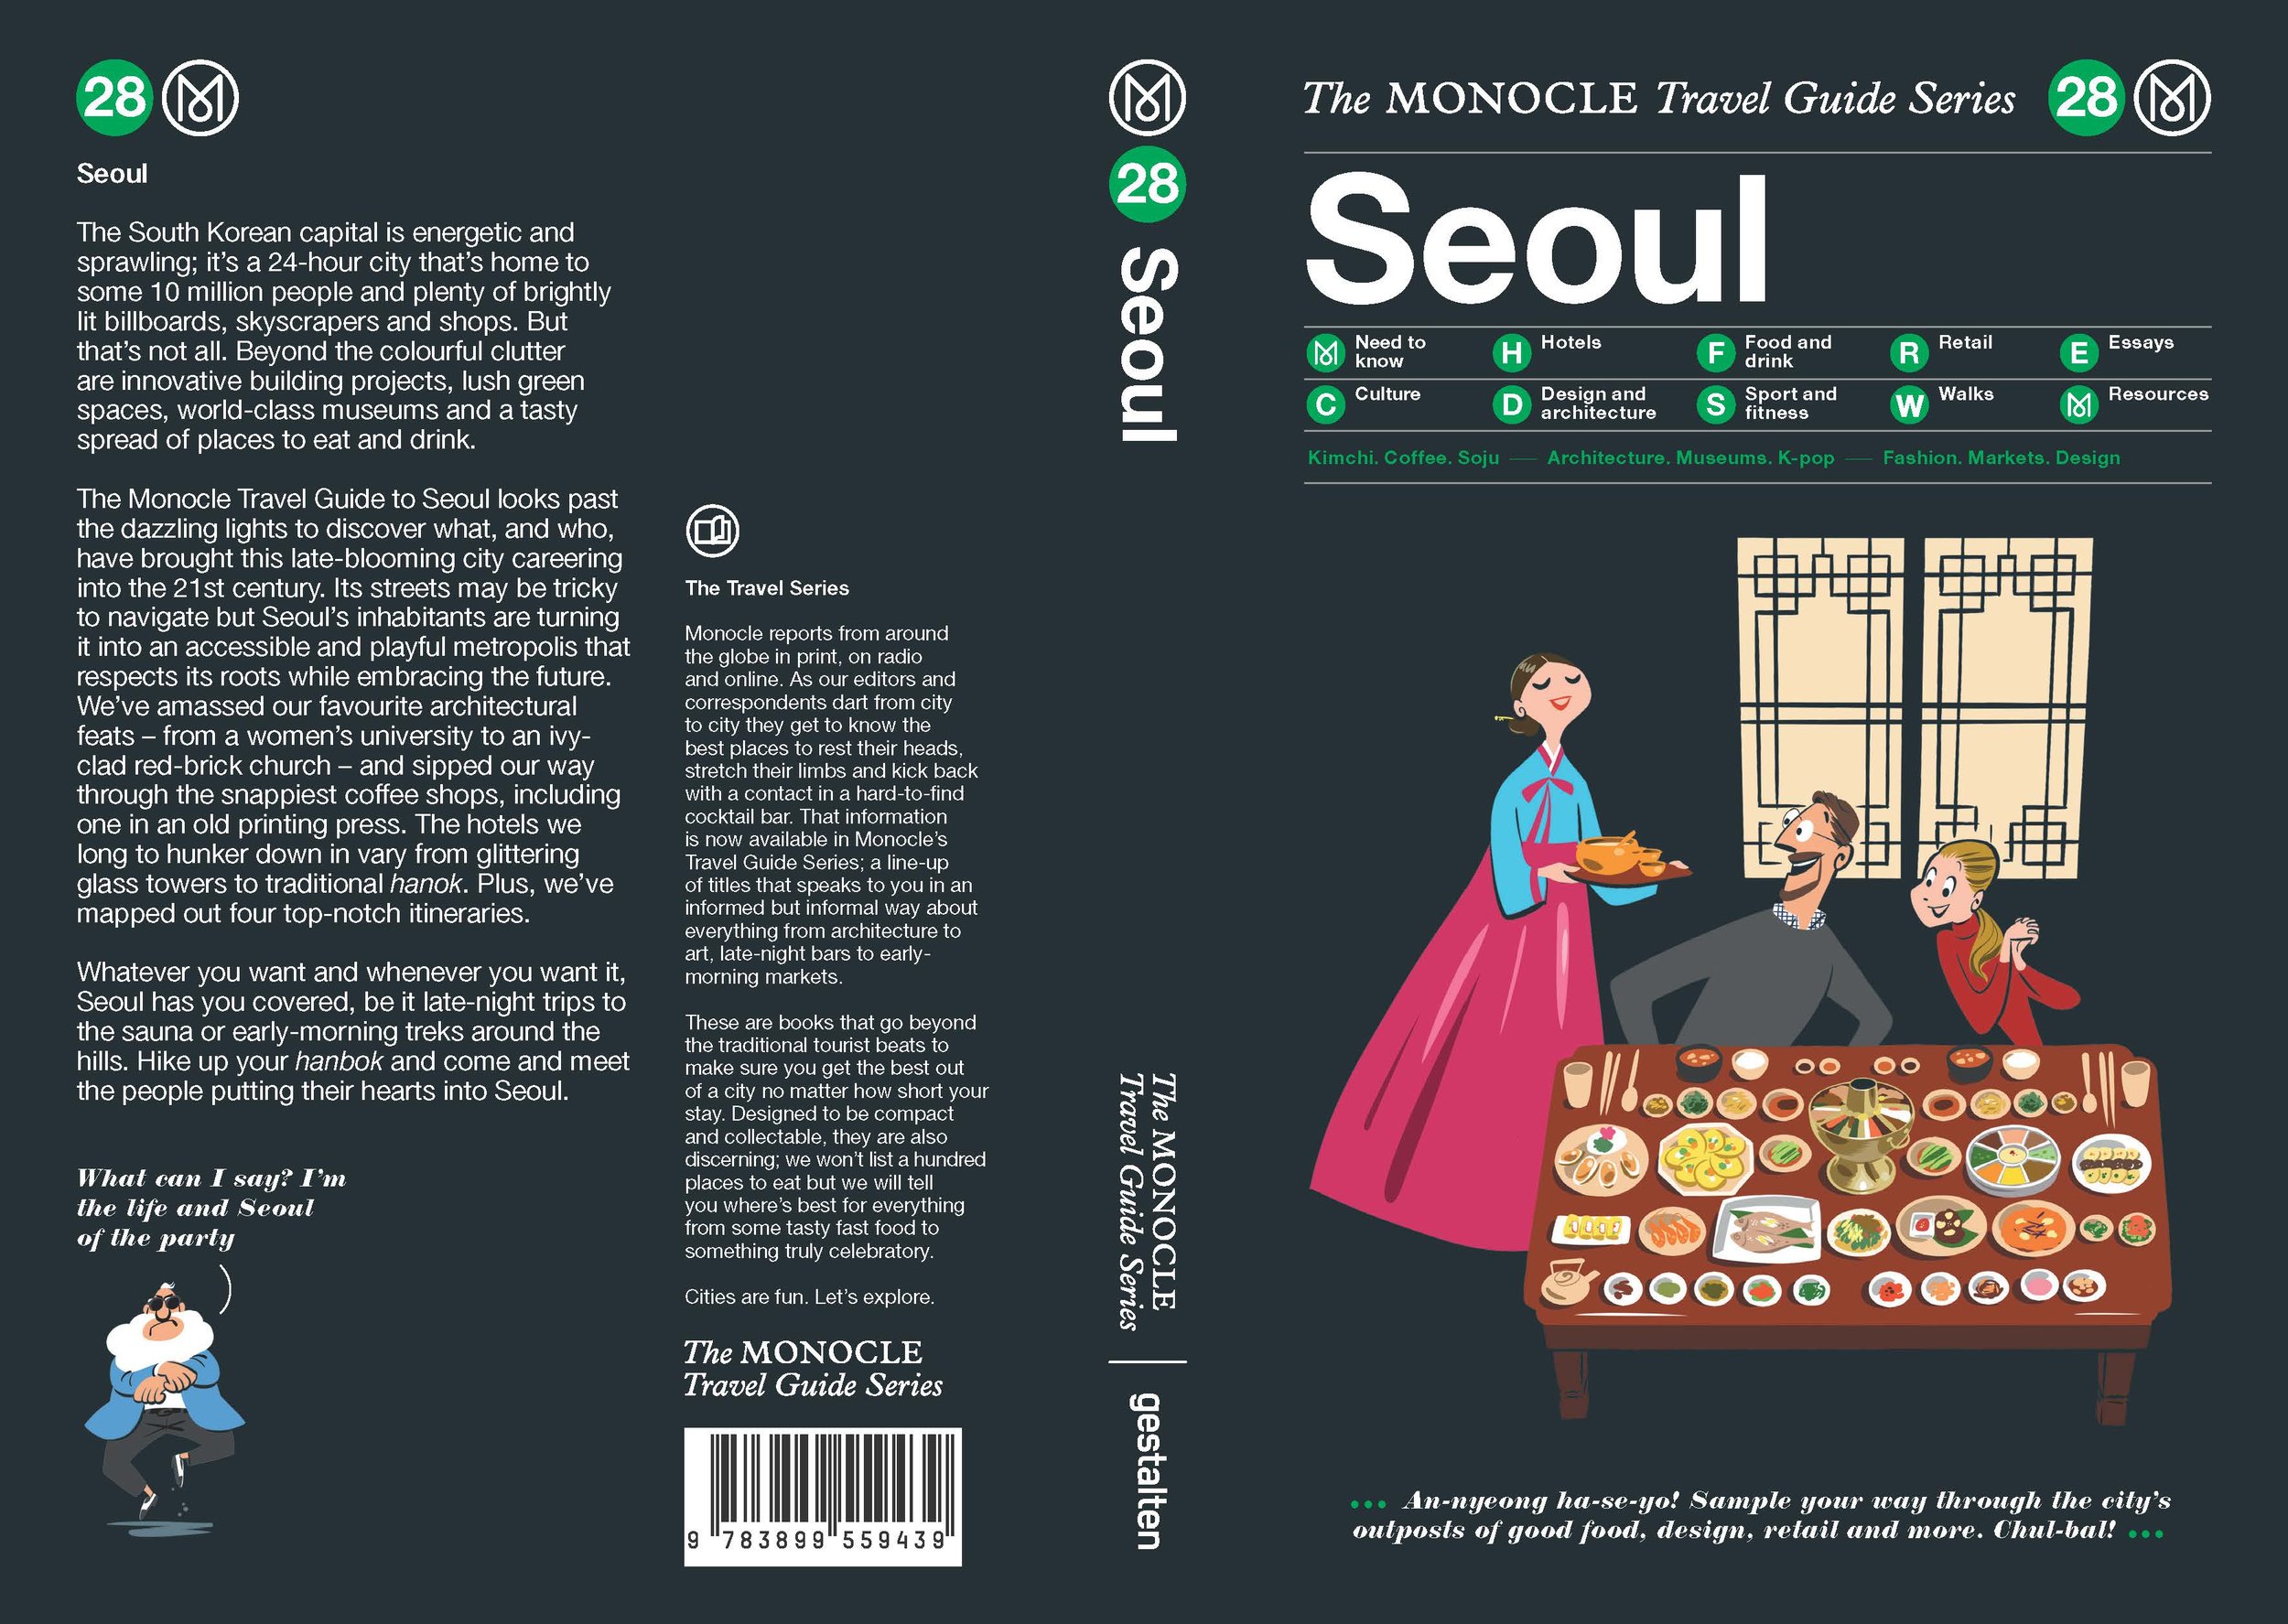 000_Seoul_full cover.jpg